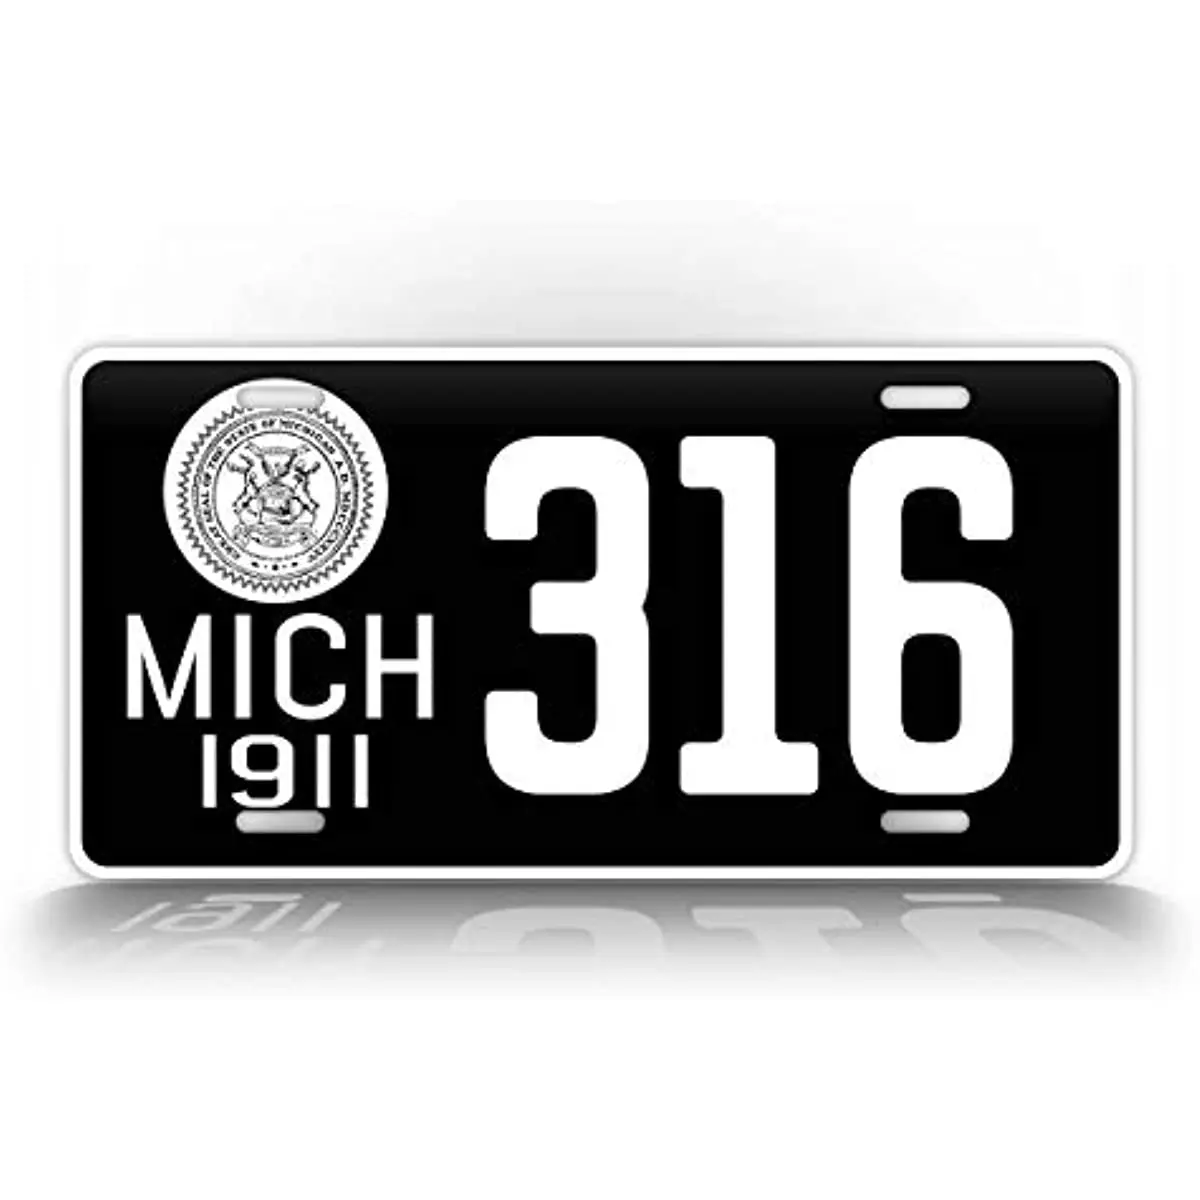 

Индивидуальная антикварная копия 1911, номерной знак штат Мичиган, персонализированный индивидуальный любой текст, автомобильная бирка, настенное украшение, металлический настенный знак